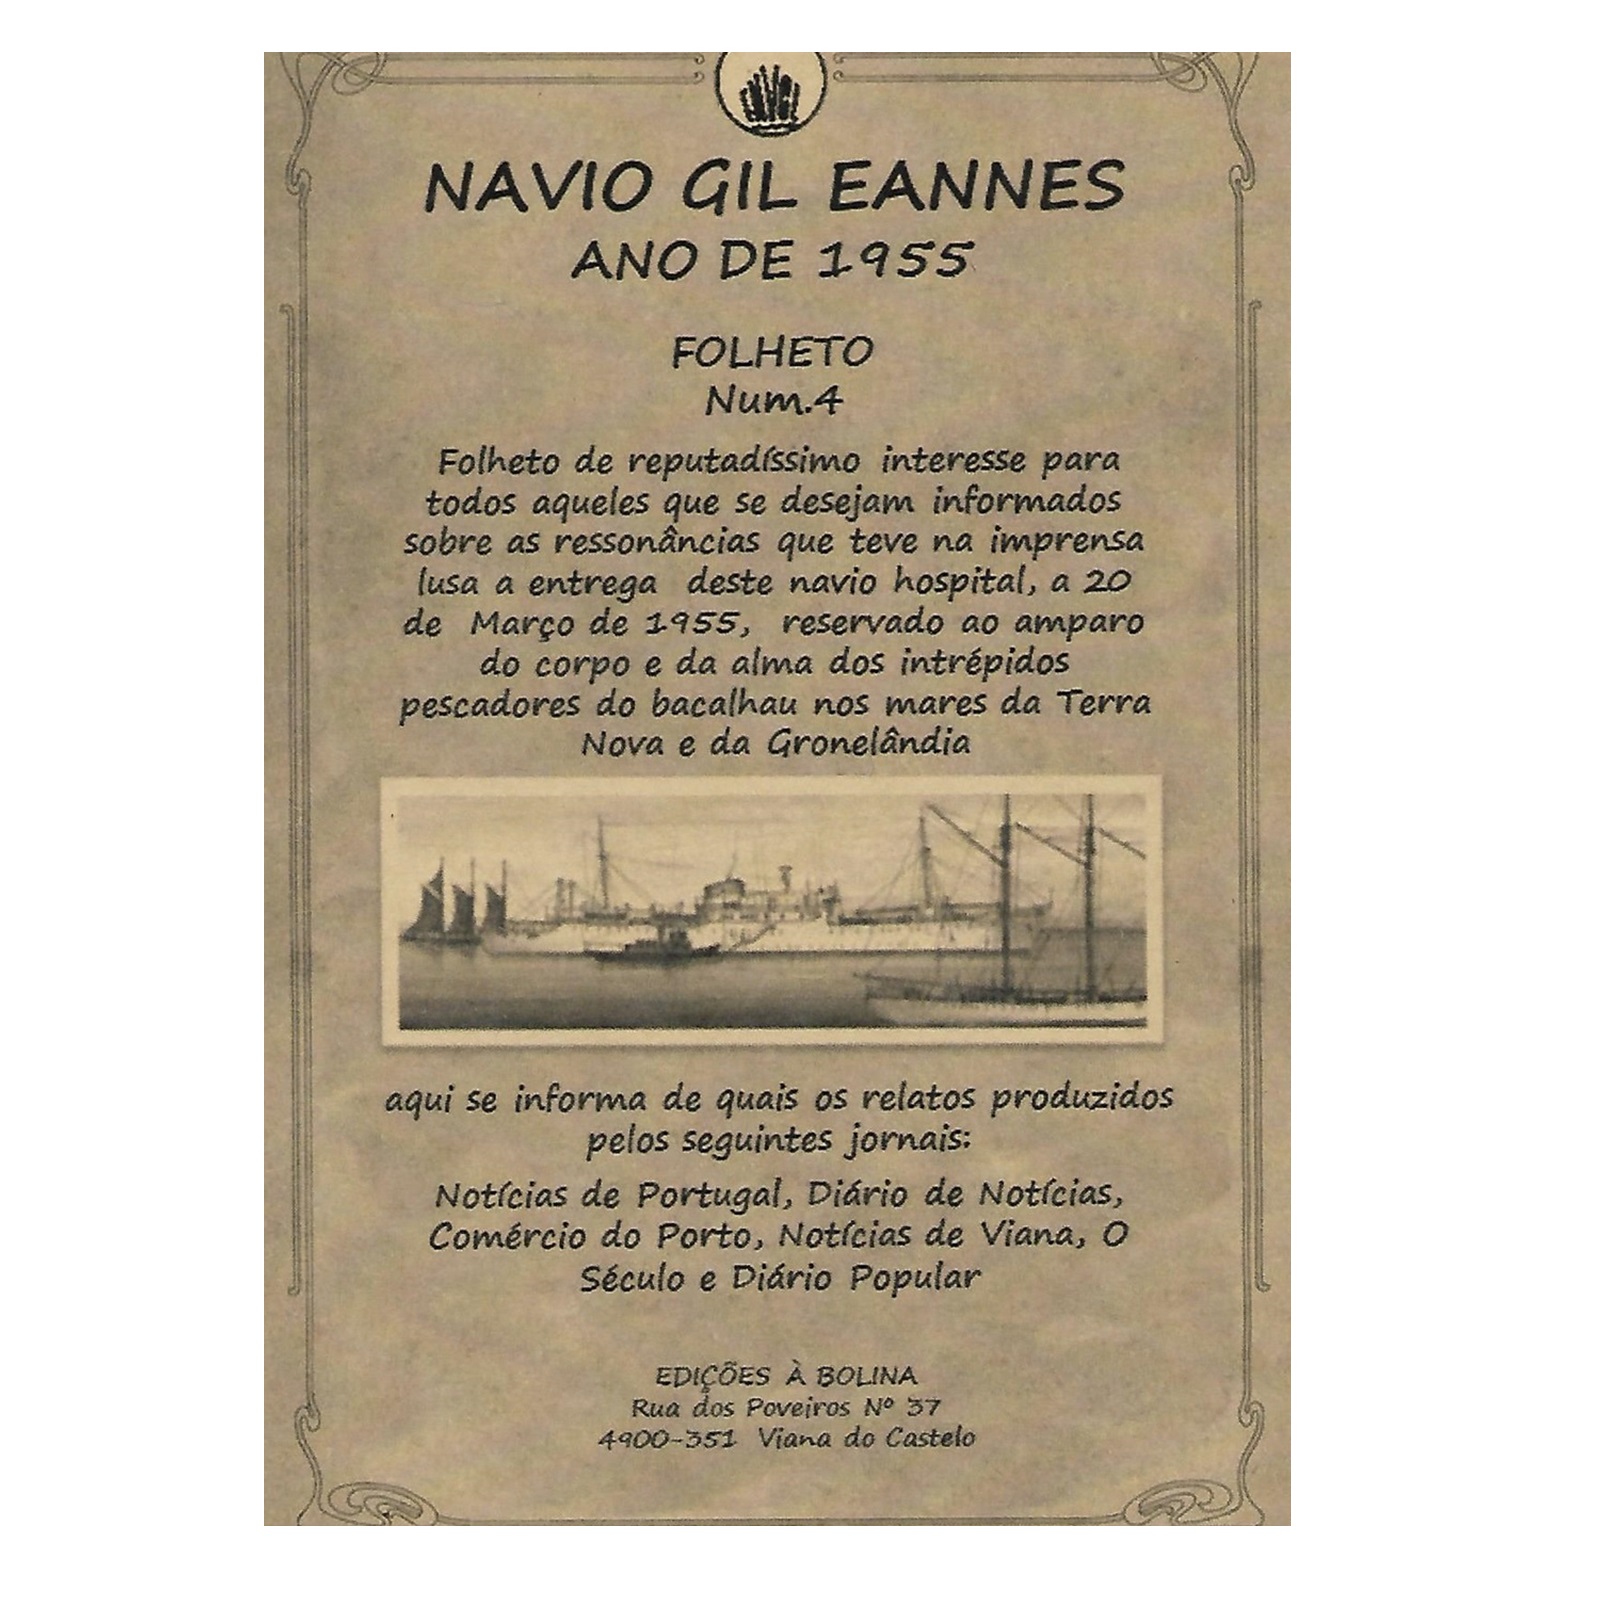 NAVIO GIL EANNES. ANO DE 1955.